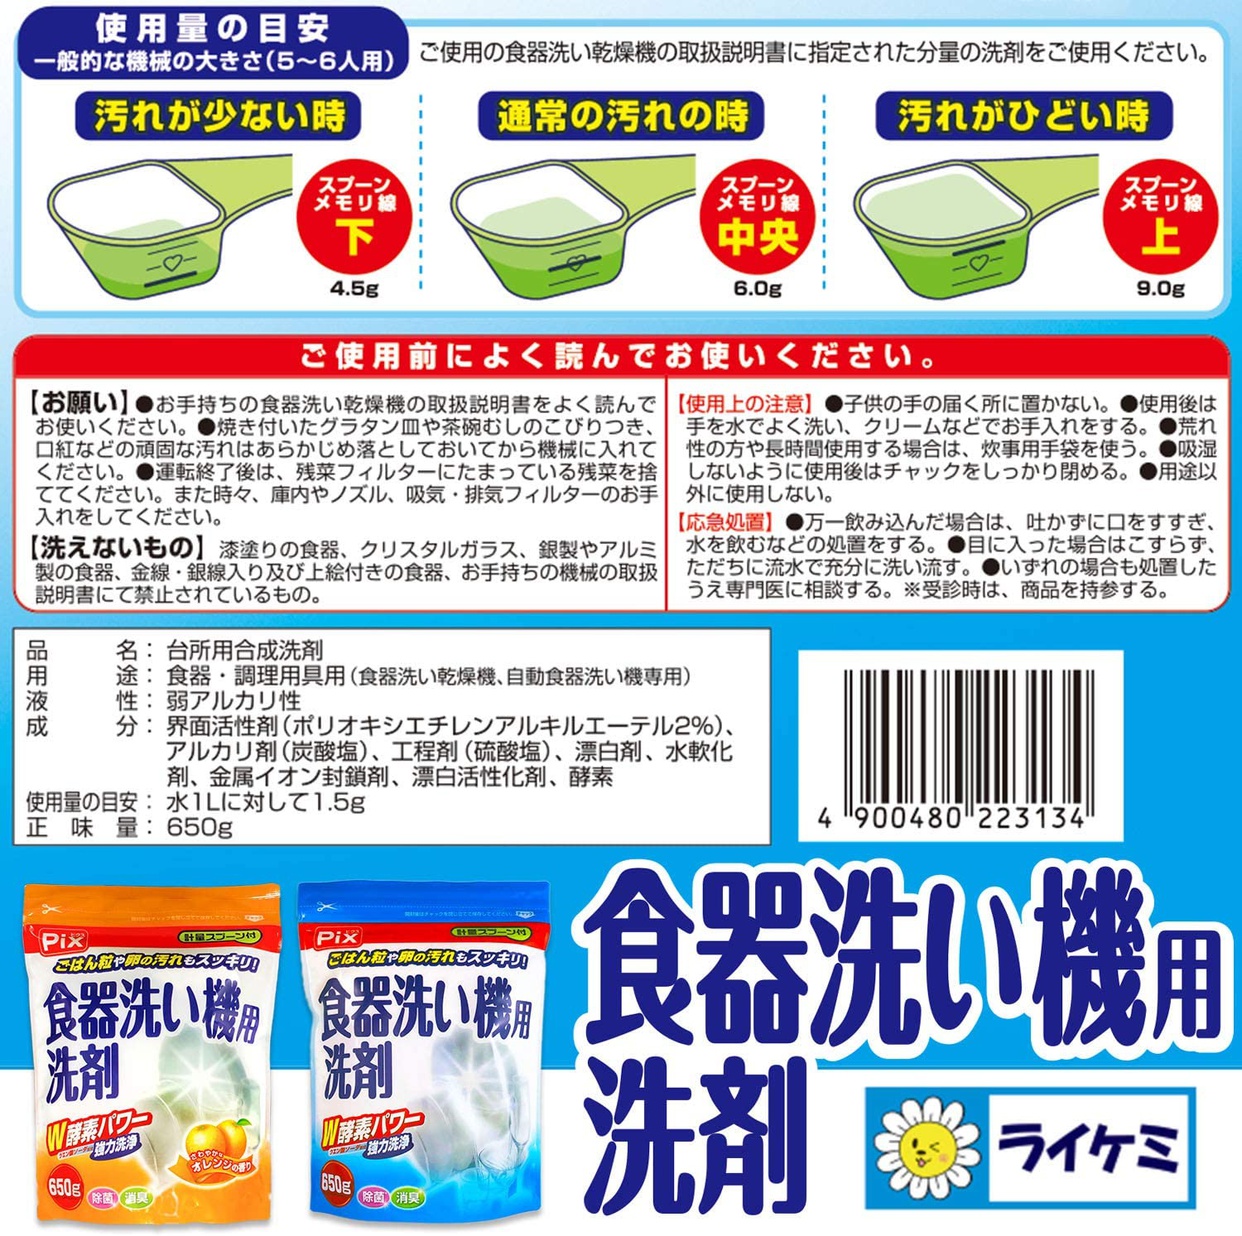 ライオンケミカル ピクス 食器洗い機用洗剤の商品画像5 